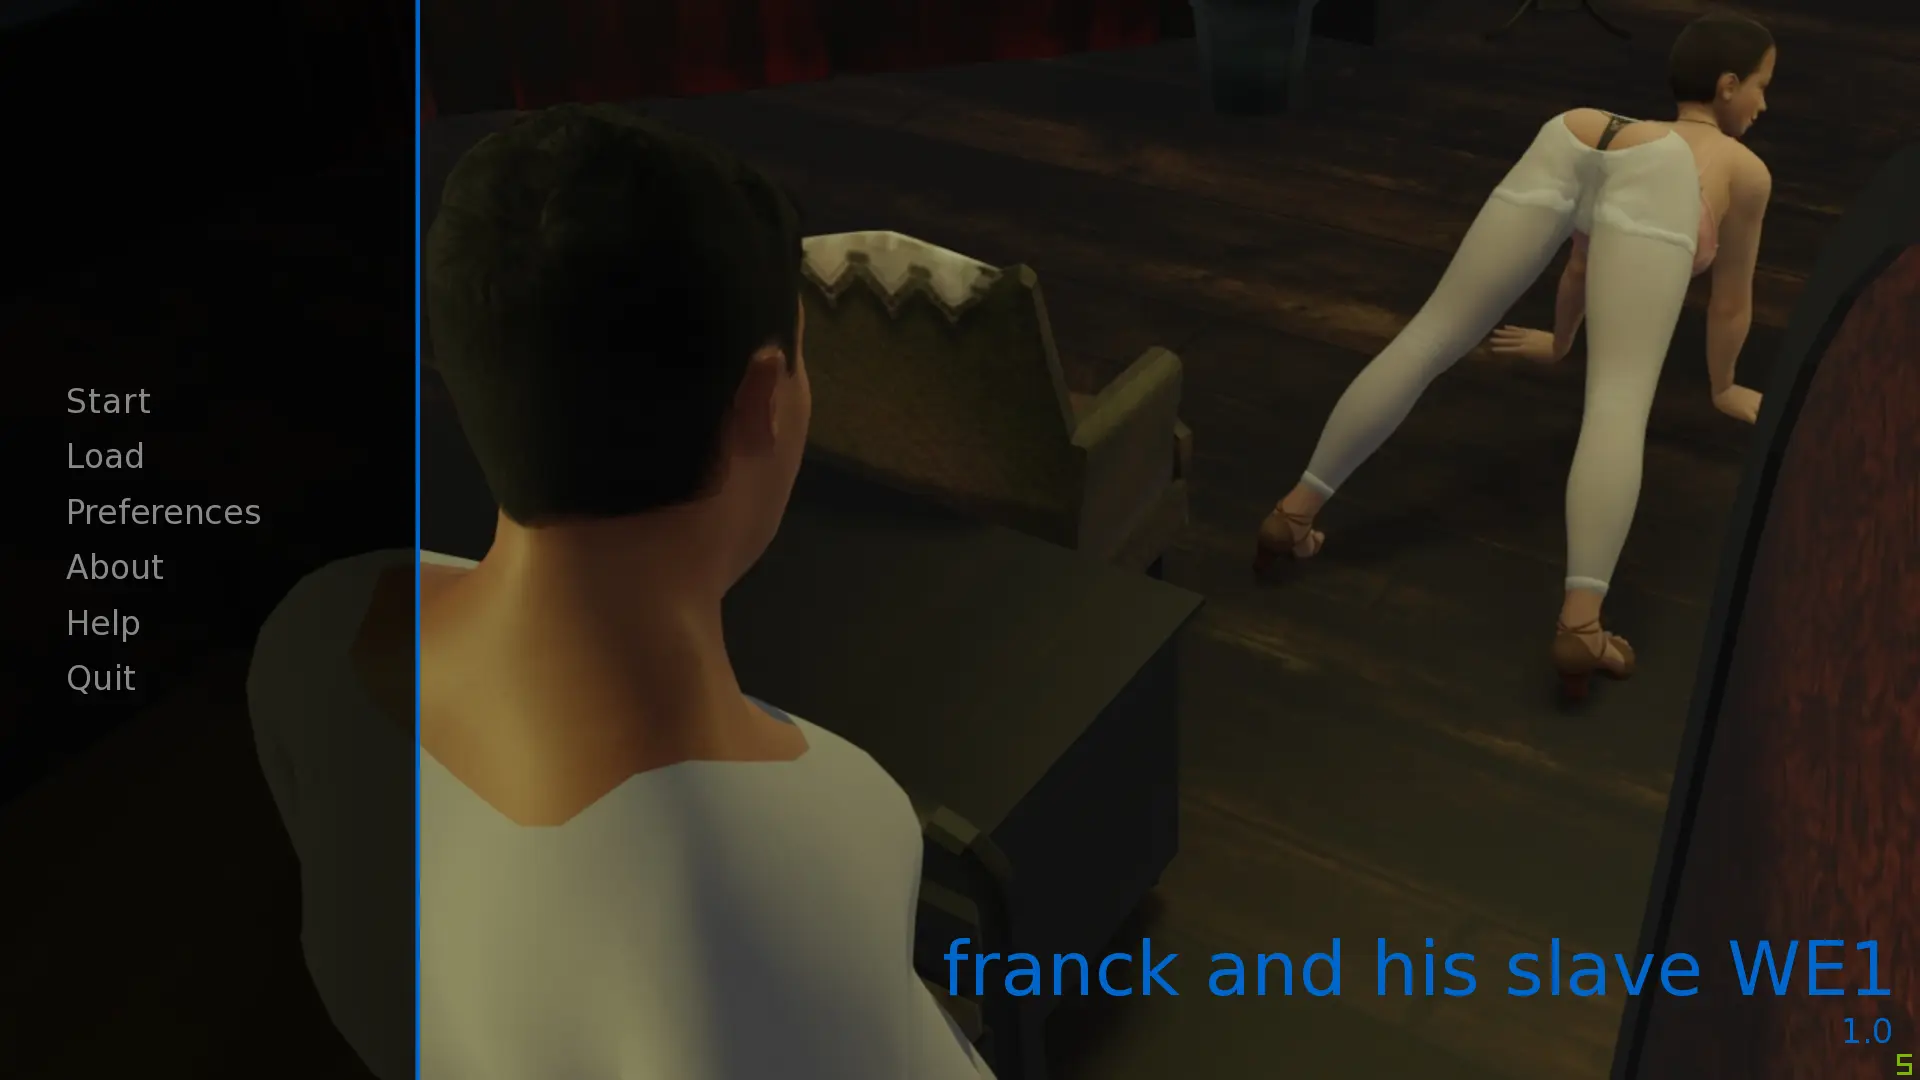 Franck and his slave main image